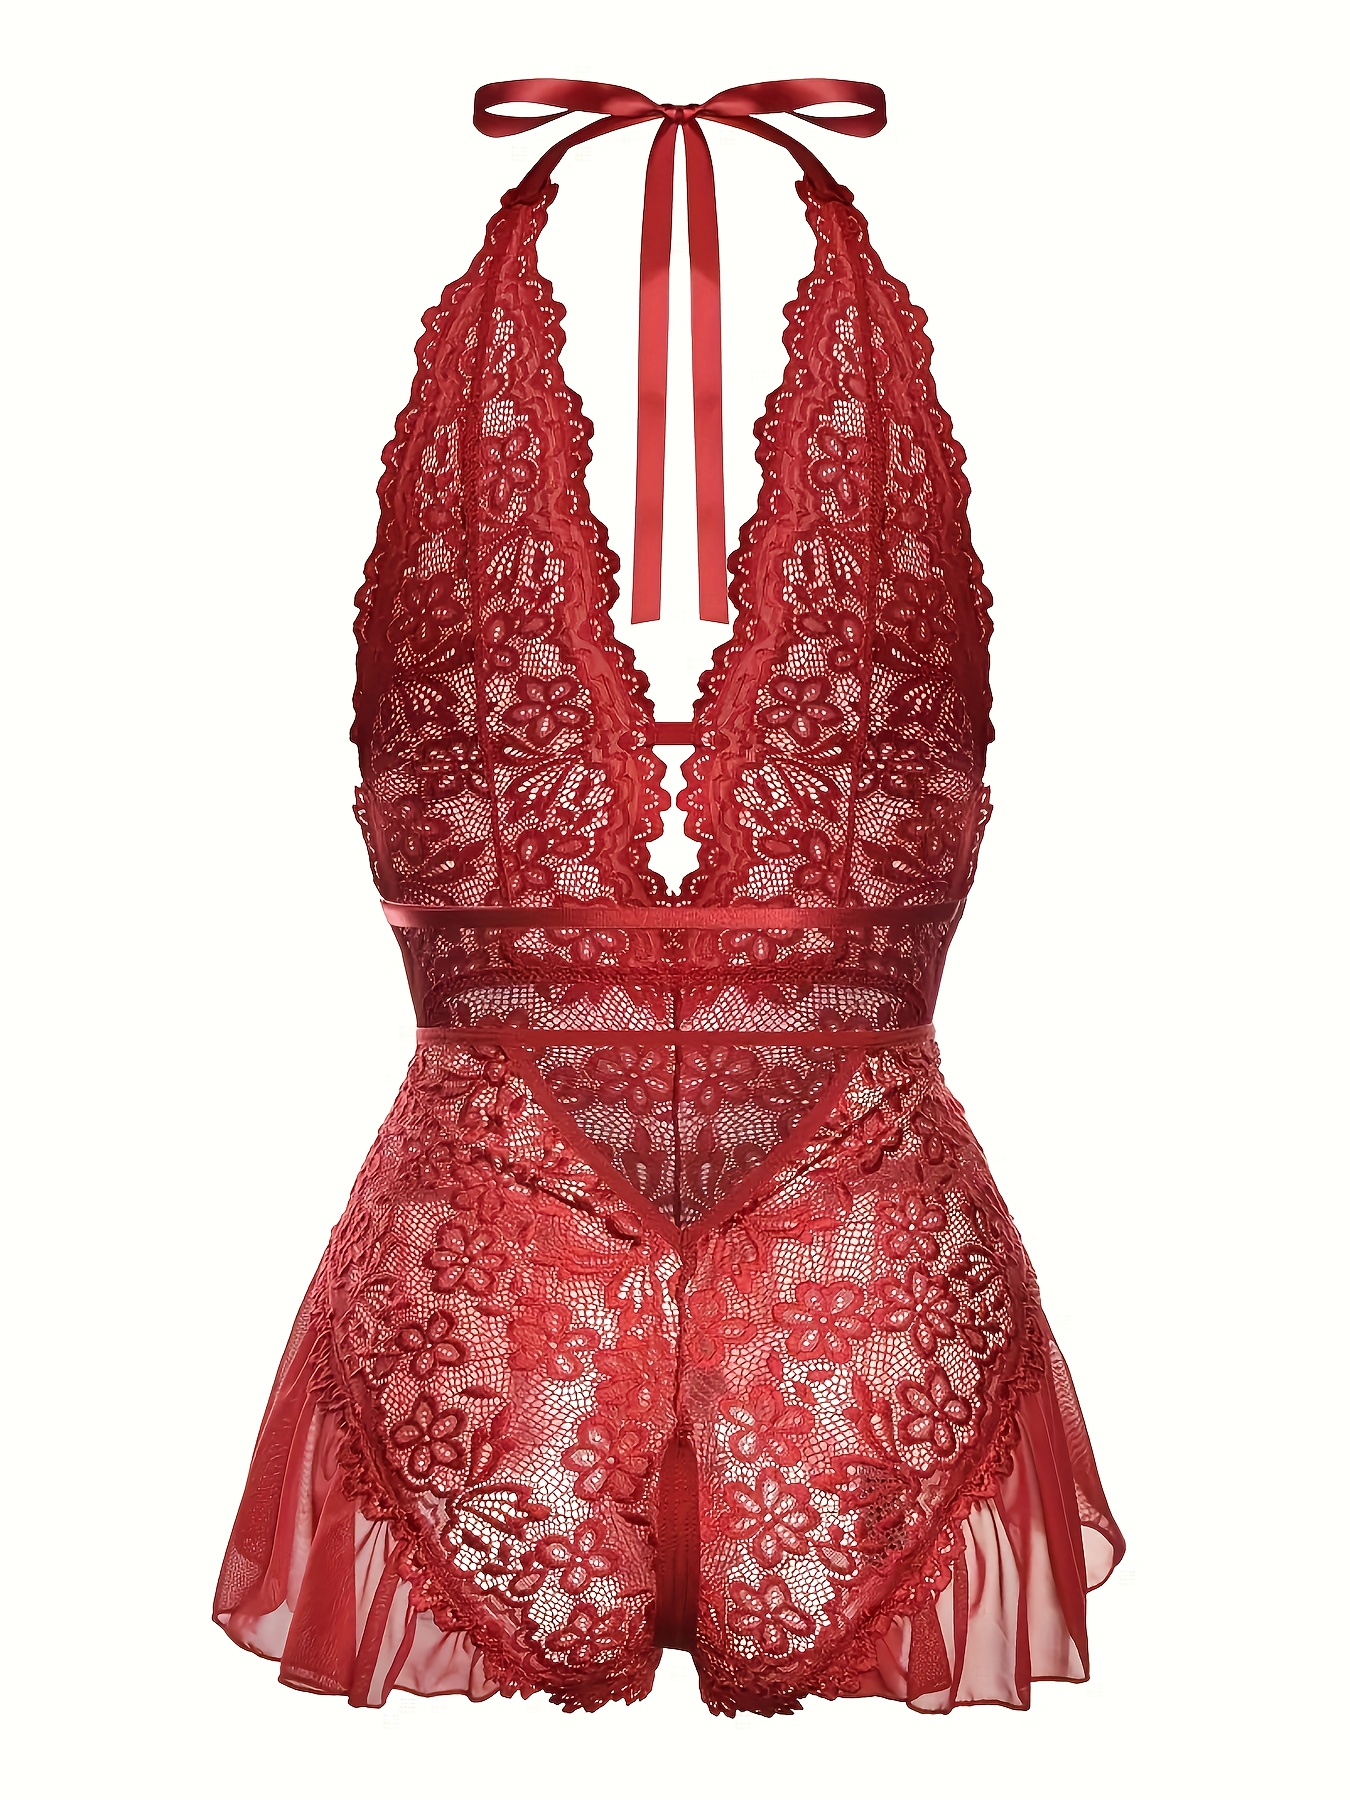 Buy Creamsicle Lace Bodysuit - Order Teddies online 1124512200